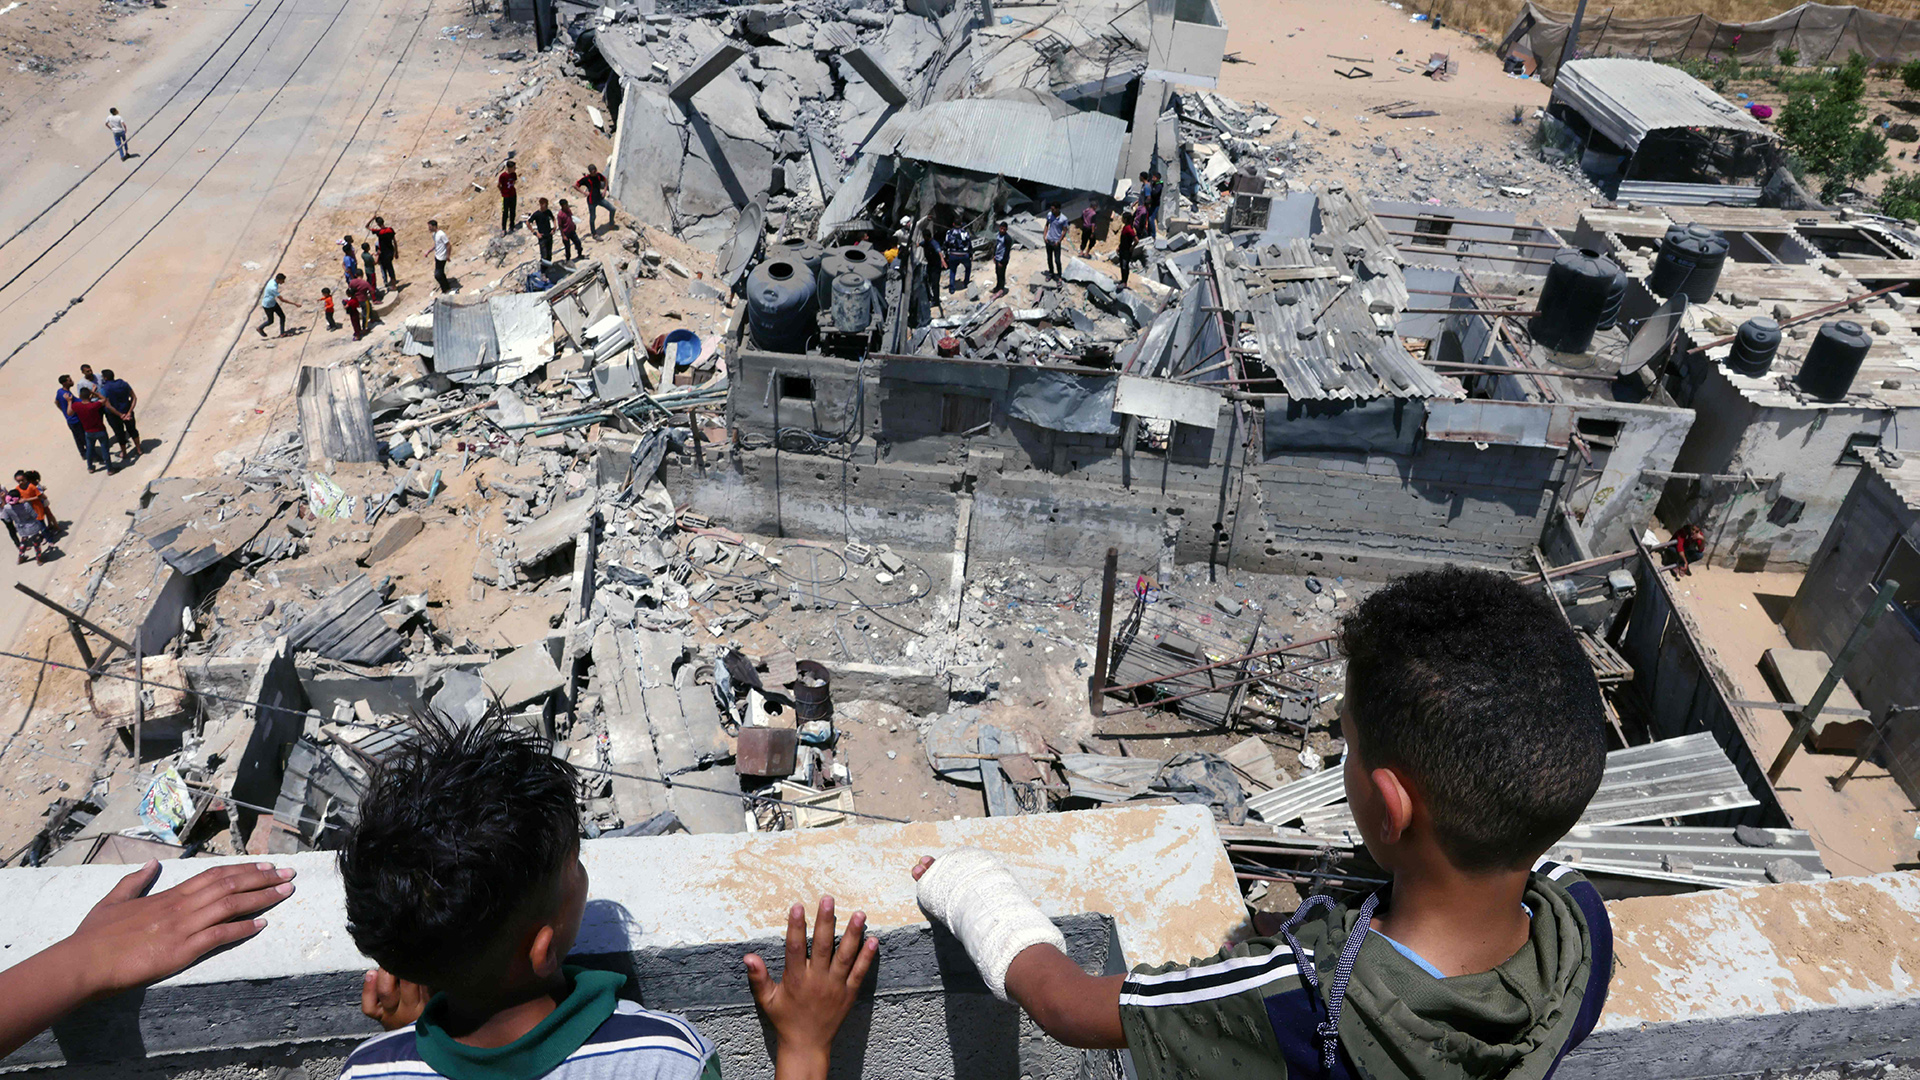 Palästinenser inspizieren ihr Haus, nachdem es durch einen israelischen Luftangriff zerstört wurde, in der Stadt Rafah im südlichen Gazastreifen. | AFP